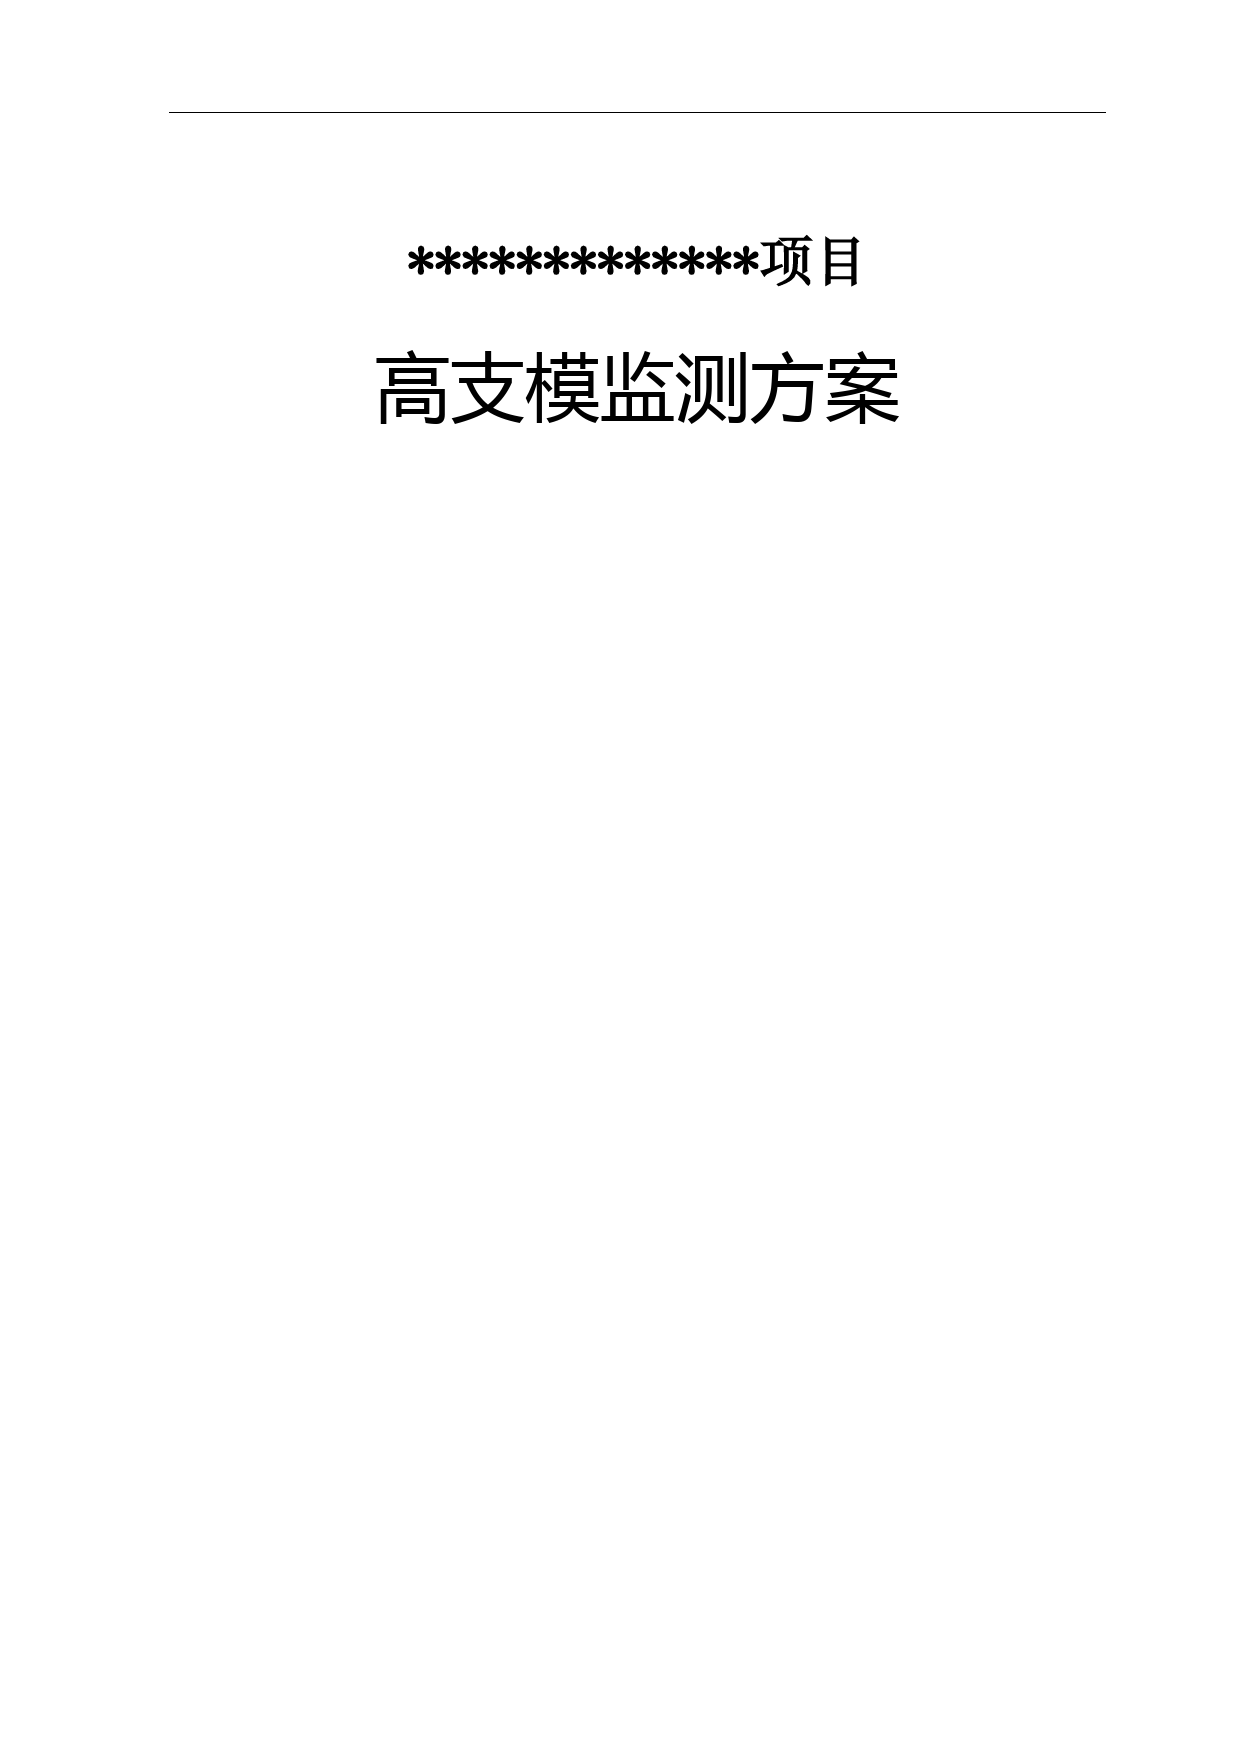 高支模监测方案(广州上传系统)